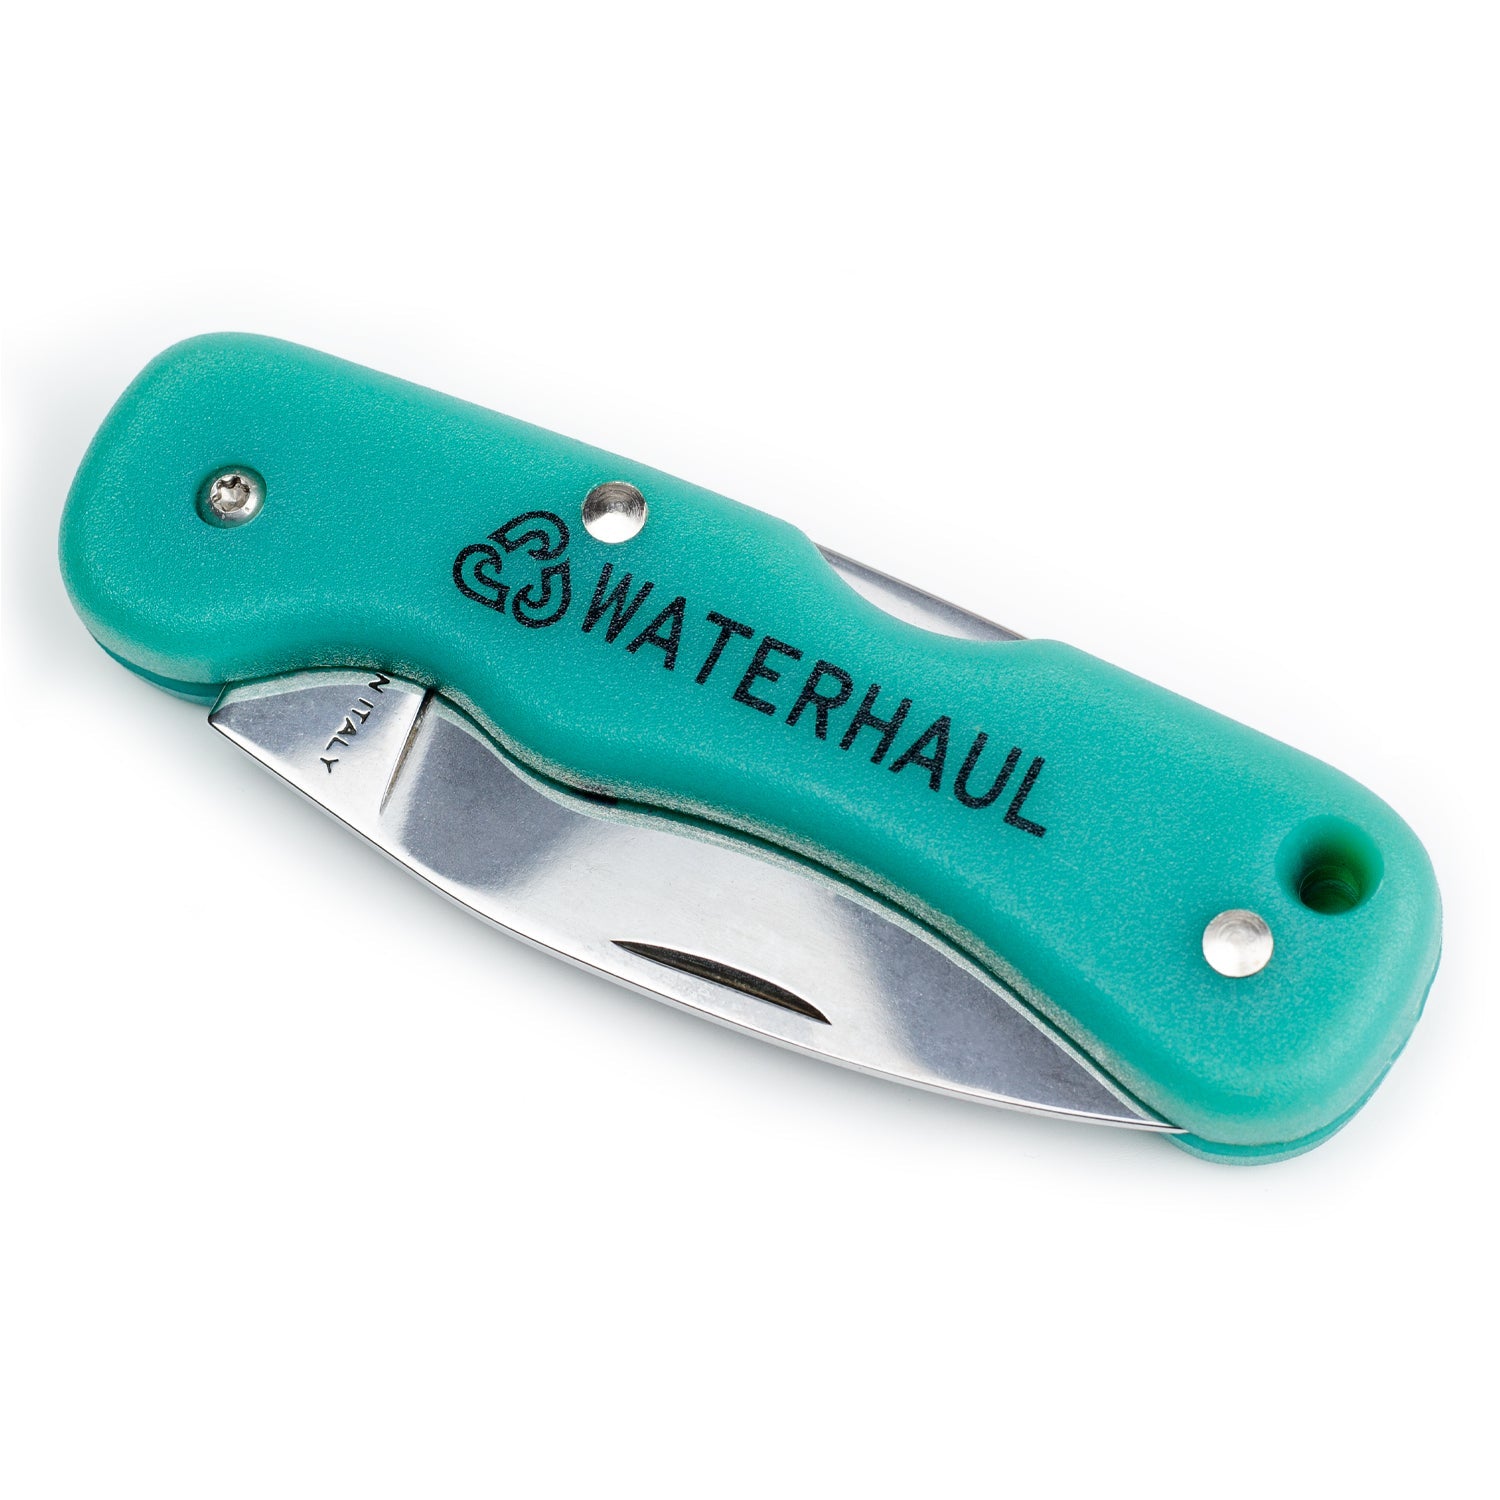 Recycled Adventure Pocket Knife - Waterhaul